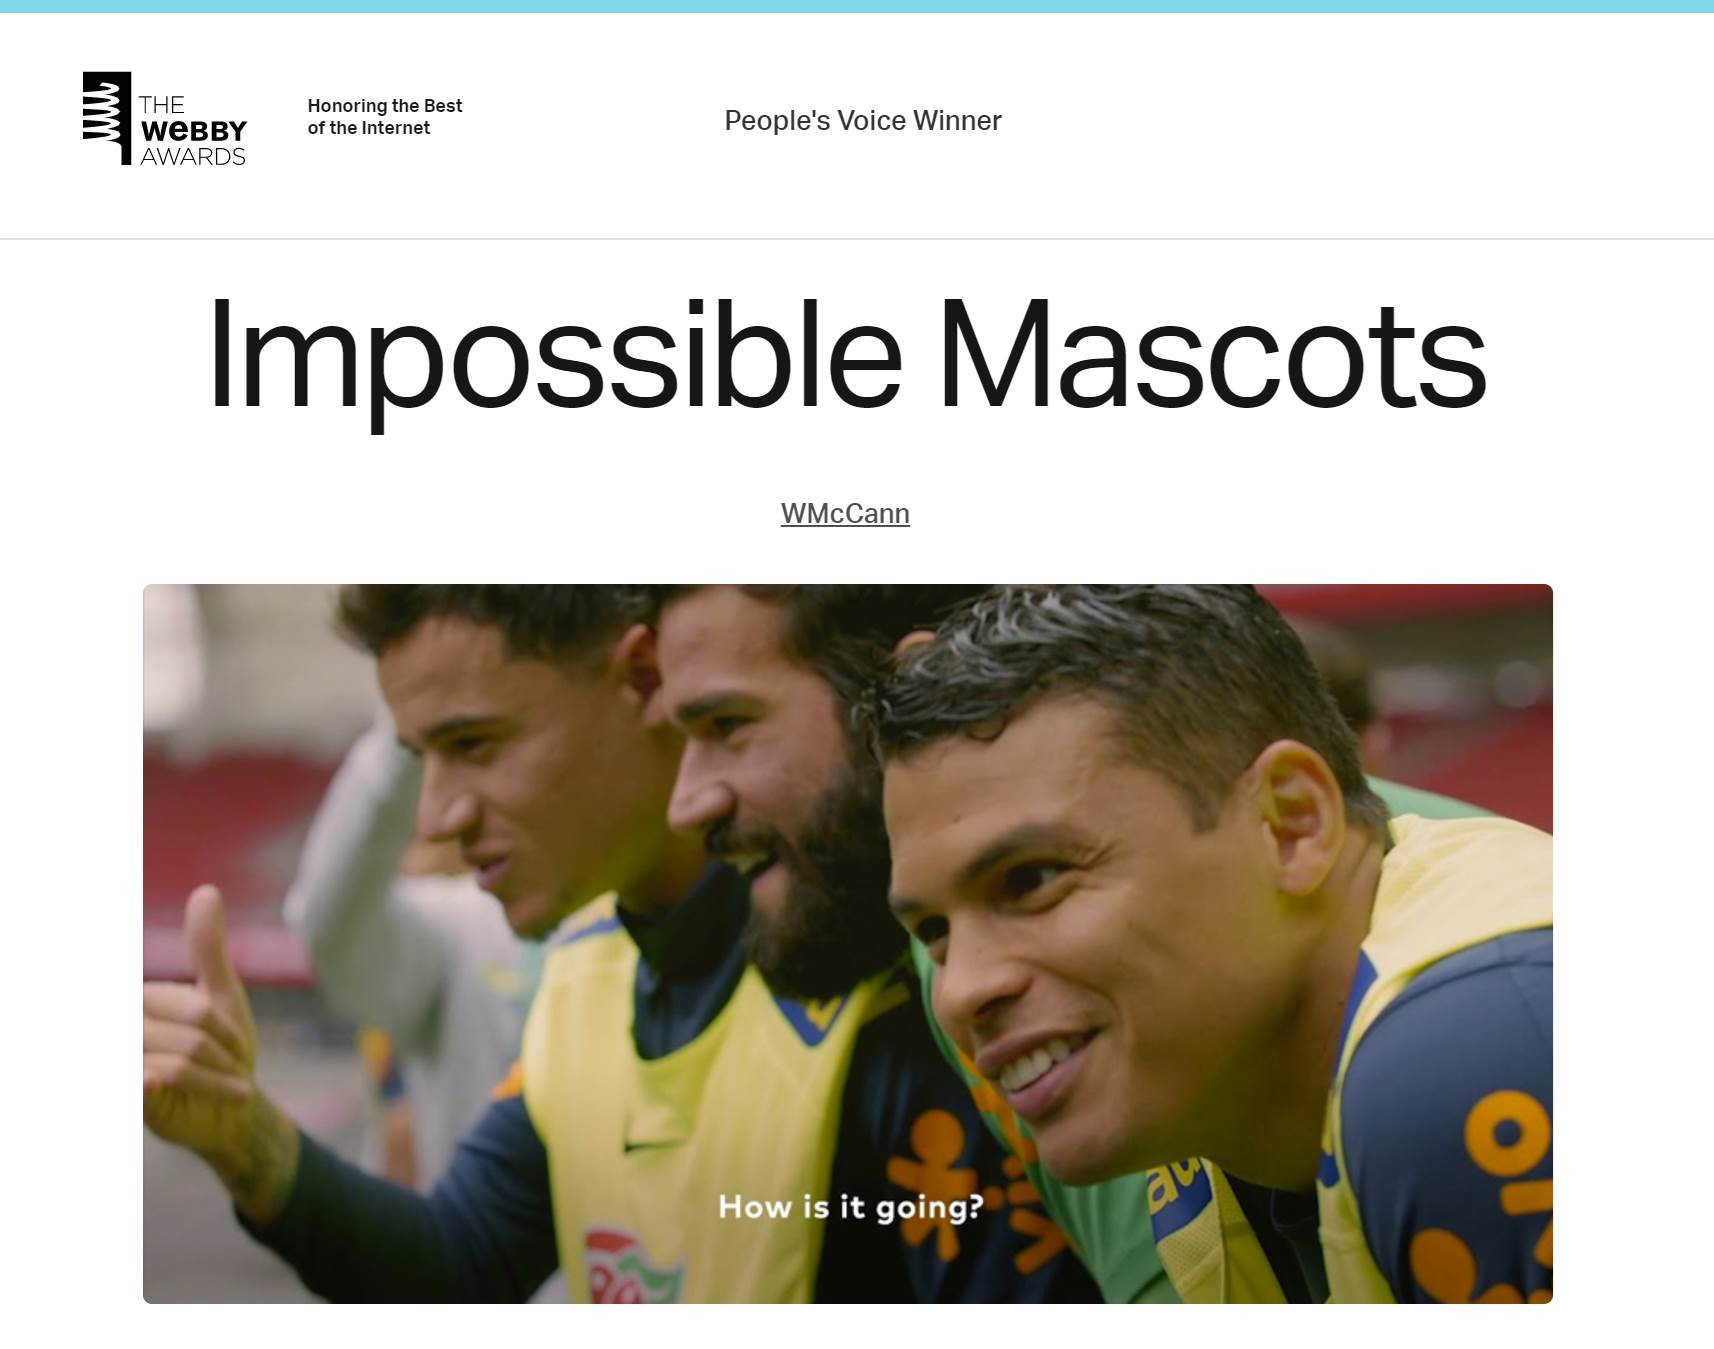 Foto do site do prêmio "The Webby Awards", com os dizeres "People's Voice Winner", "Impossible Mascots", e a imagem dos jogadores da seleção brasileira durante a ação realizada no jogo amistoso.